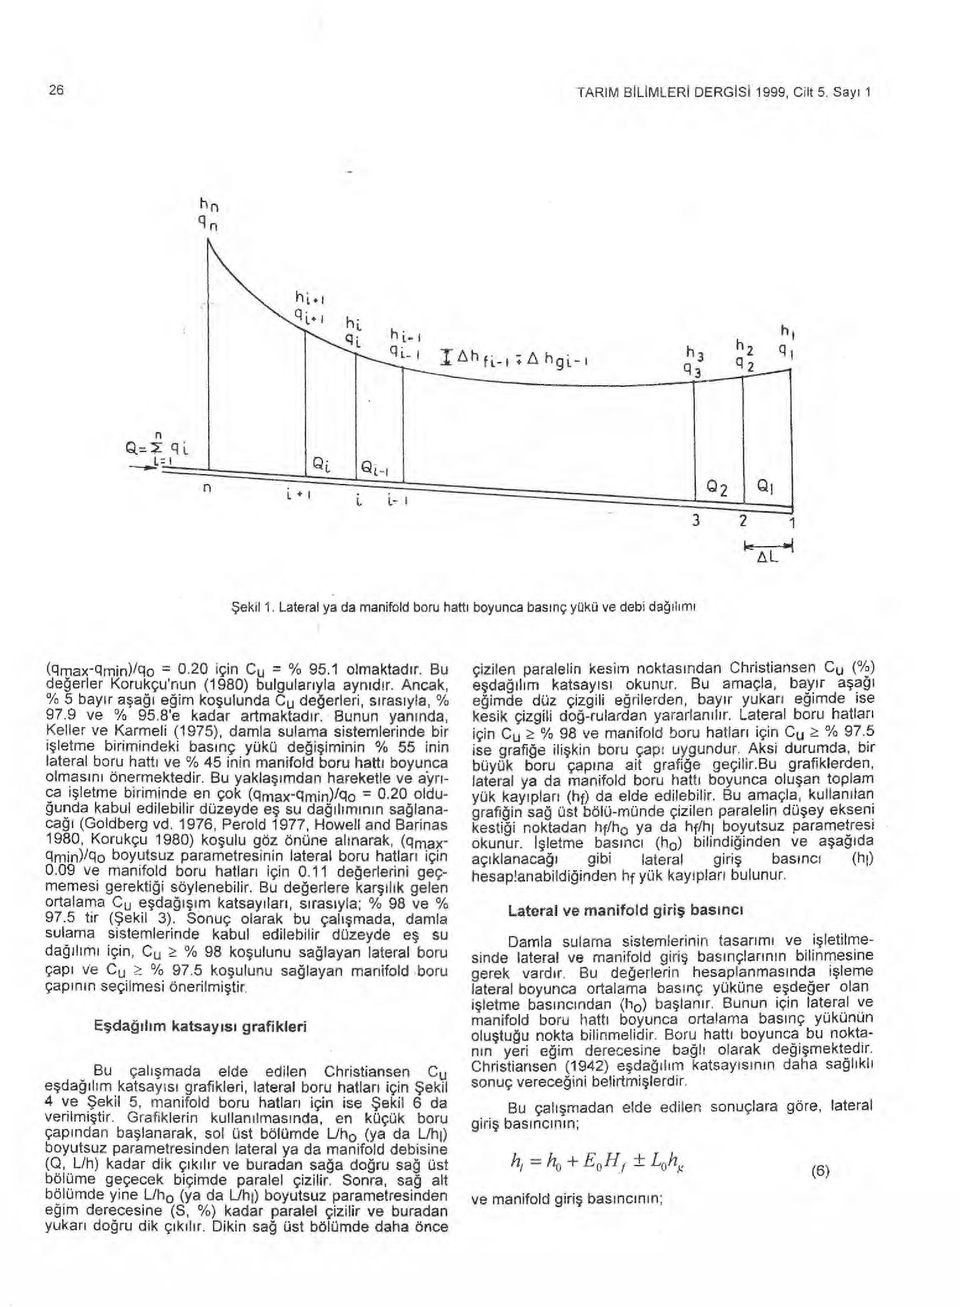 mun yan ı nda, Keller ve Karmeli (1975), damla sulama sistemlerinde bir işletme birimindeki bas ı nç yükü de ğ işiminin % 55 inin lateral boru hatt ı ve % 45 inin manifold boru hatt ı boyunca olmas ı